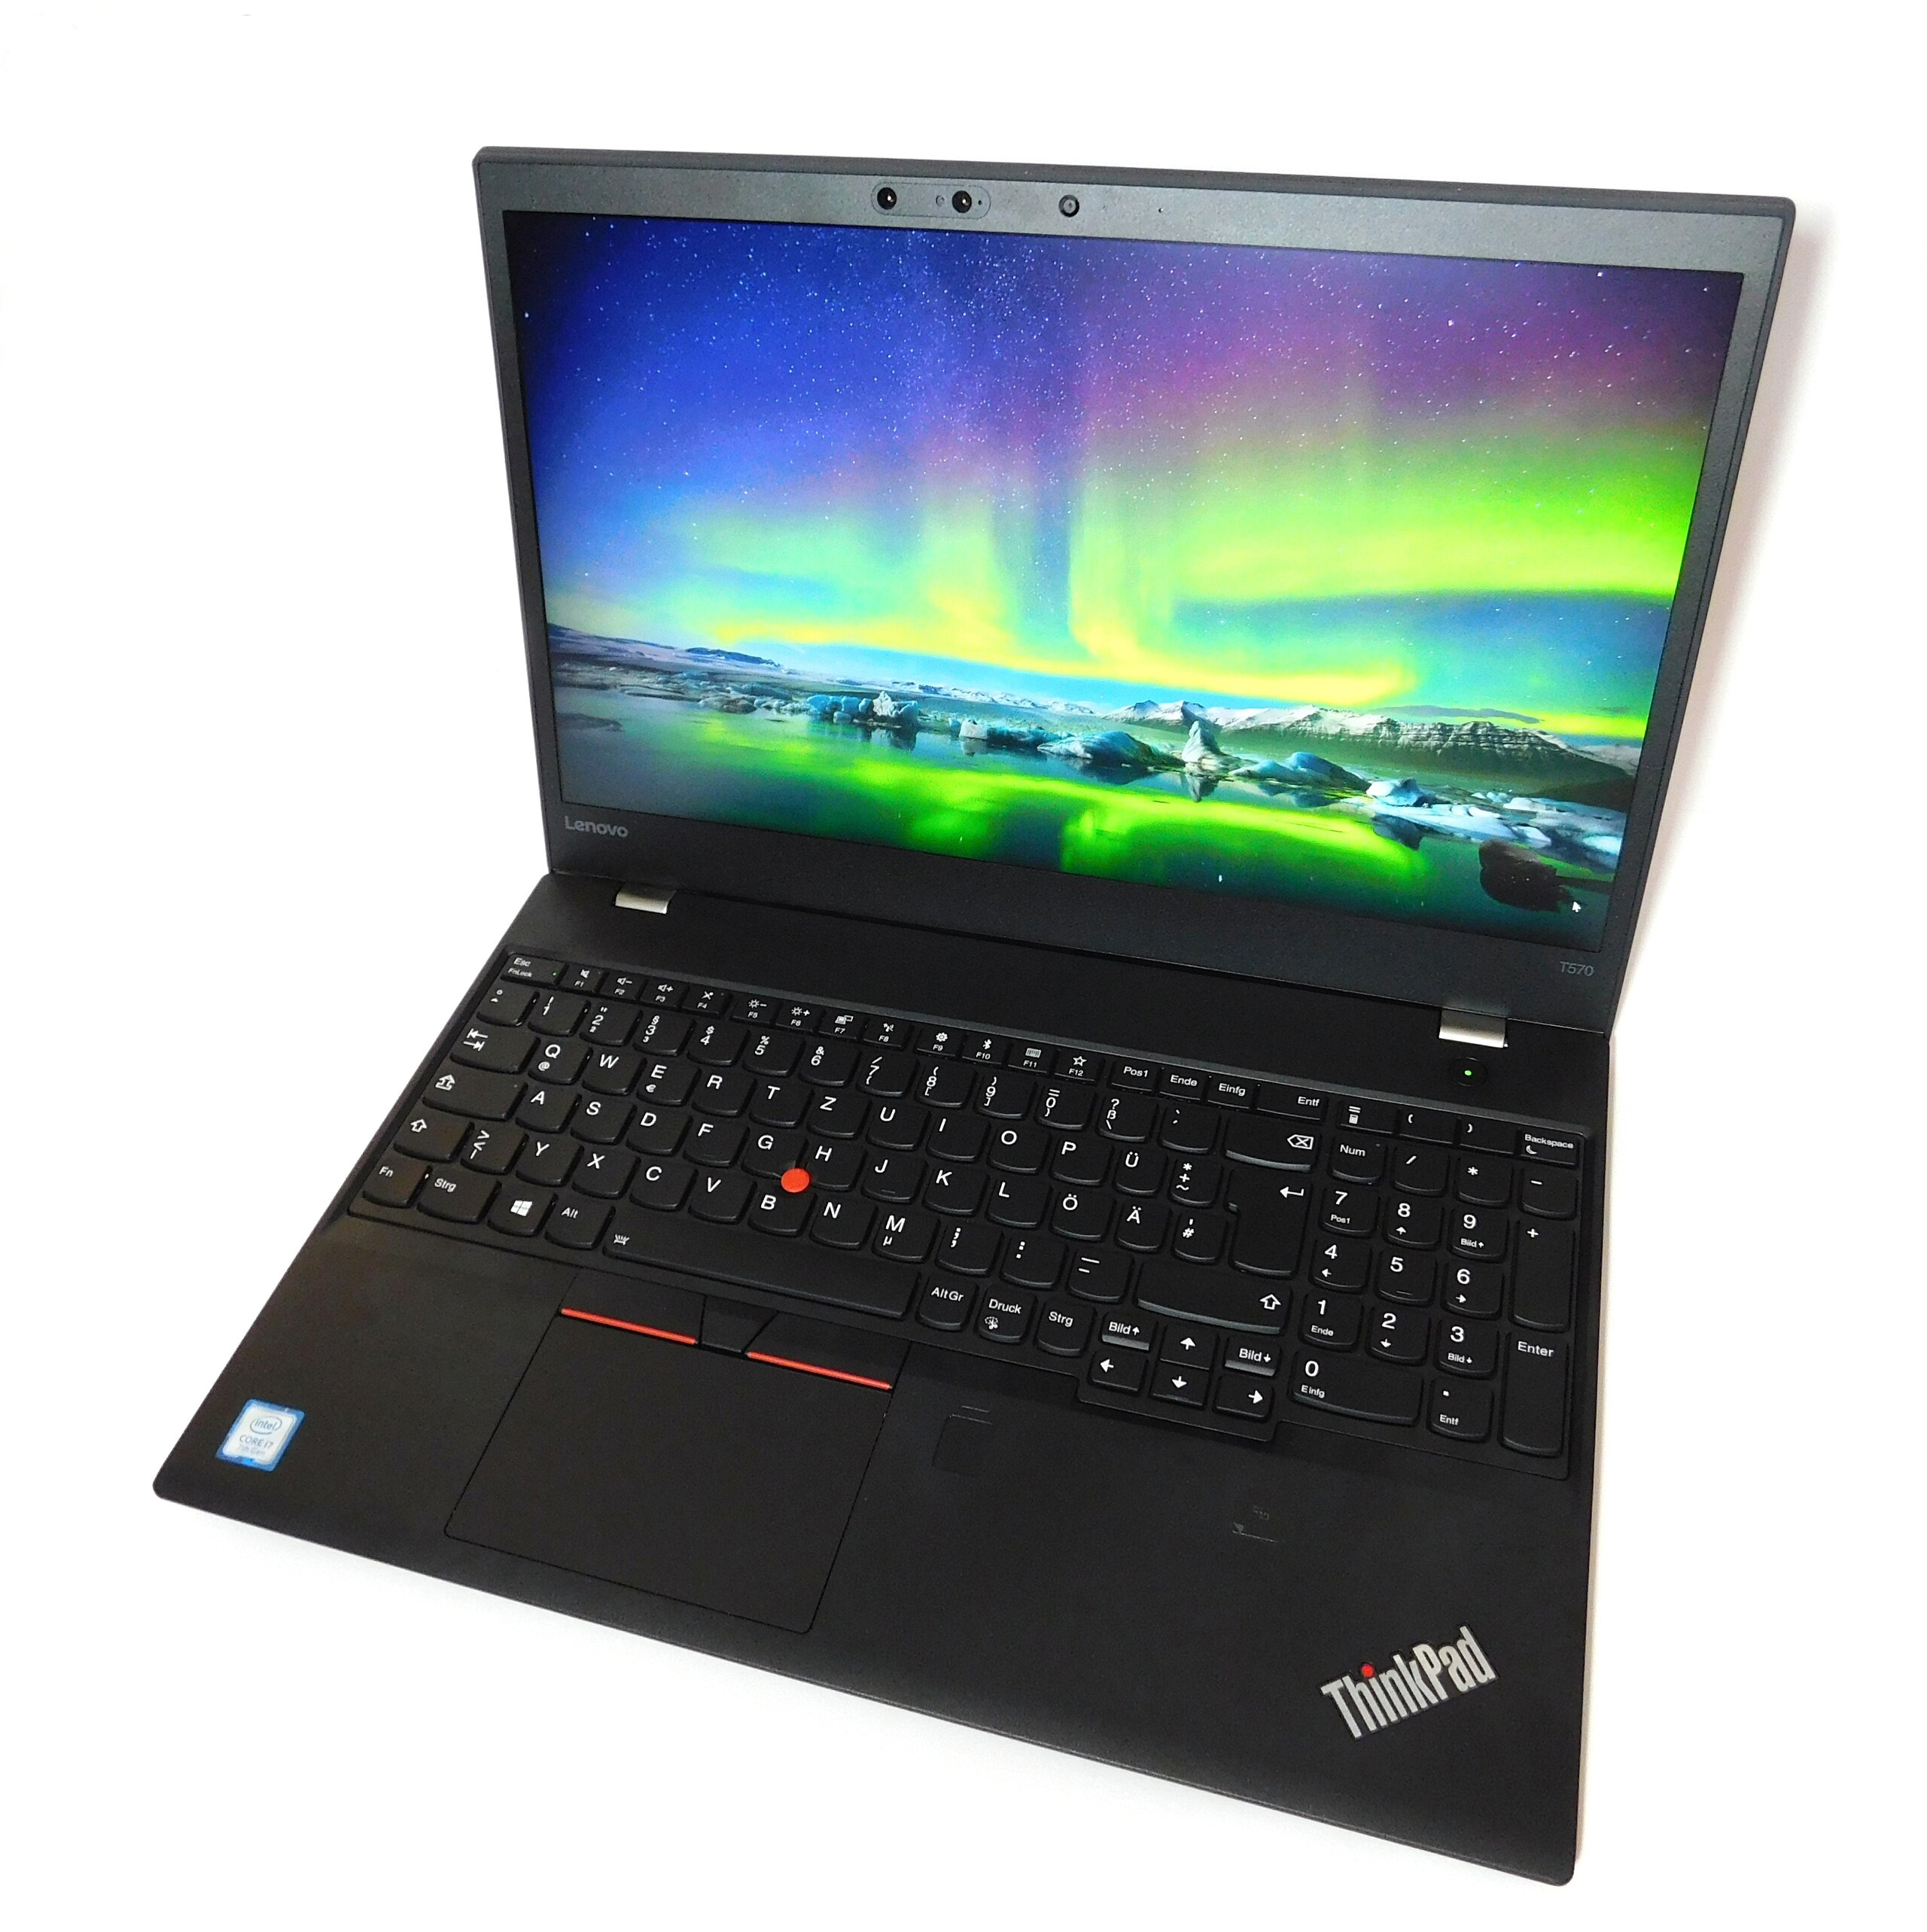 Laptop Second Hand Lenovo Thinkpad T570, Intel Core i5-7200U 2.50GHz, 8GB DDR4, 256GB SSD, 15.6 Inch Full HD, Webcam